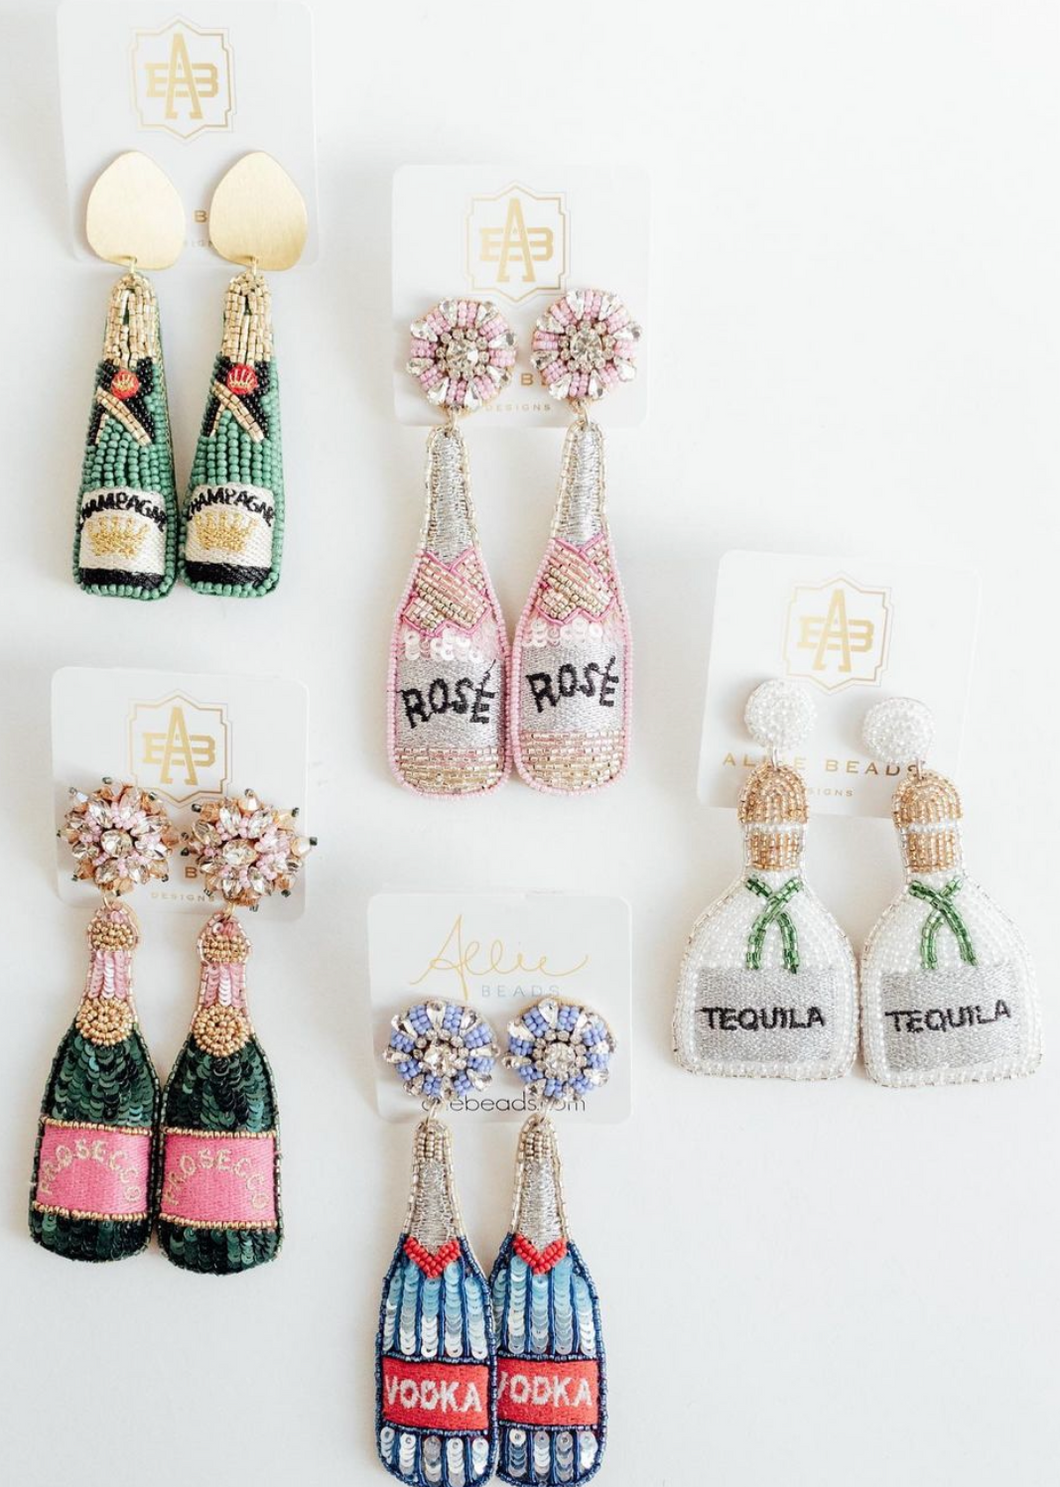 Allie Beads Rose Bottle Earrings